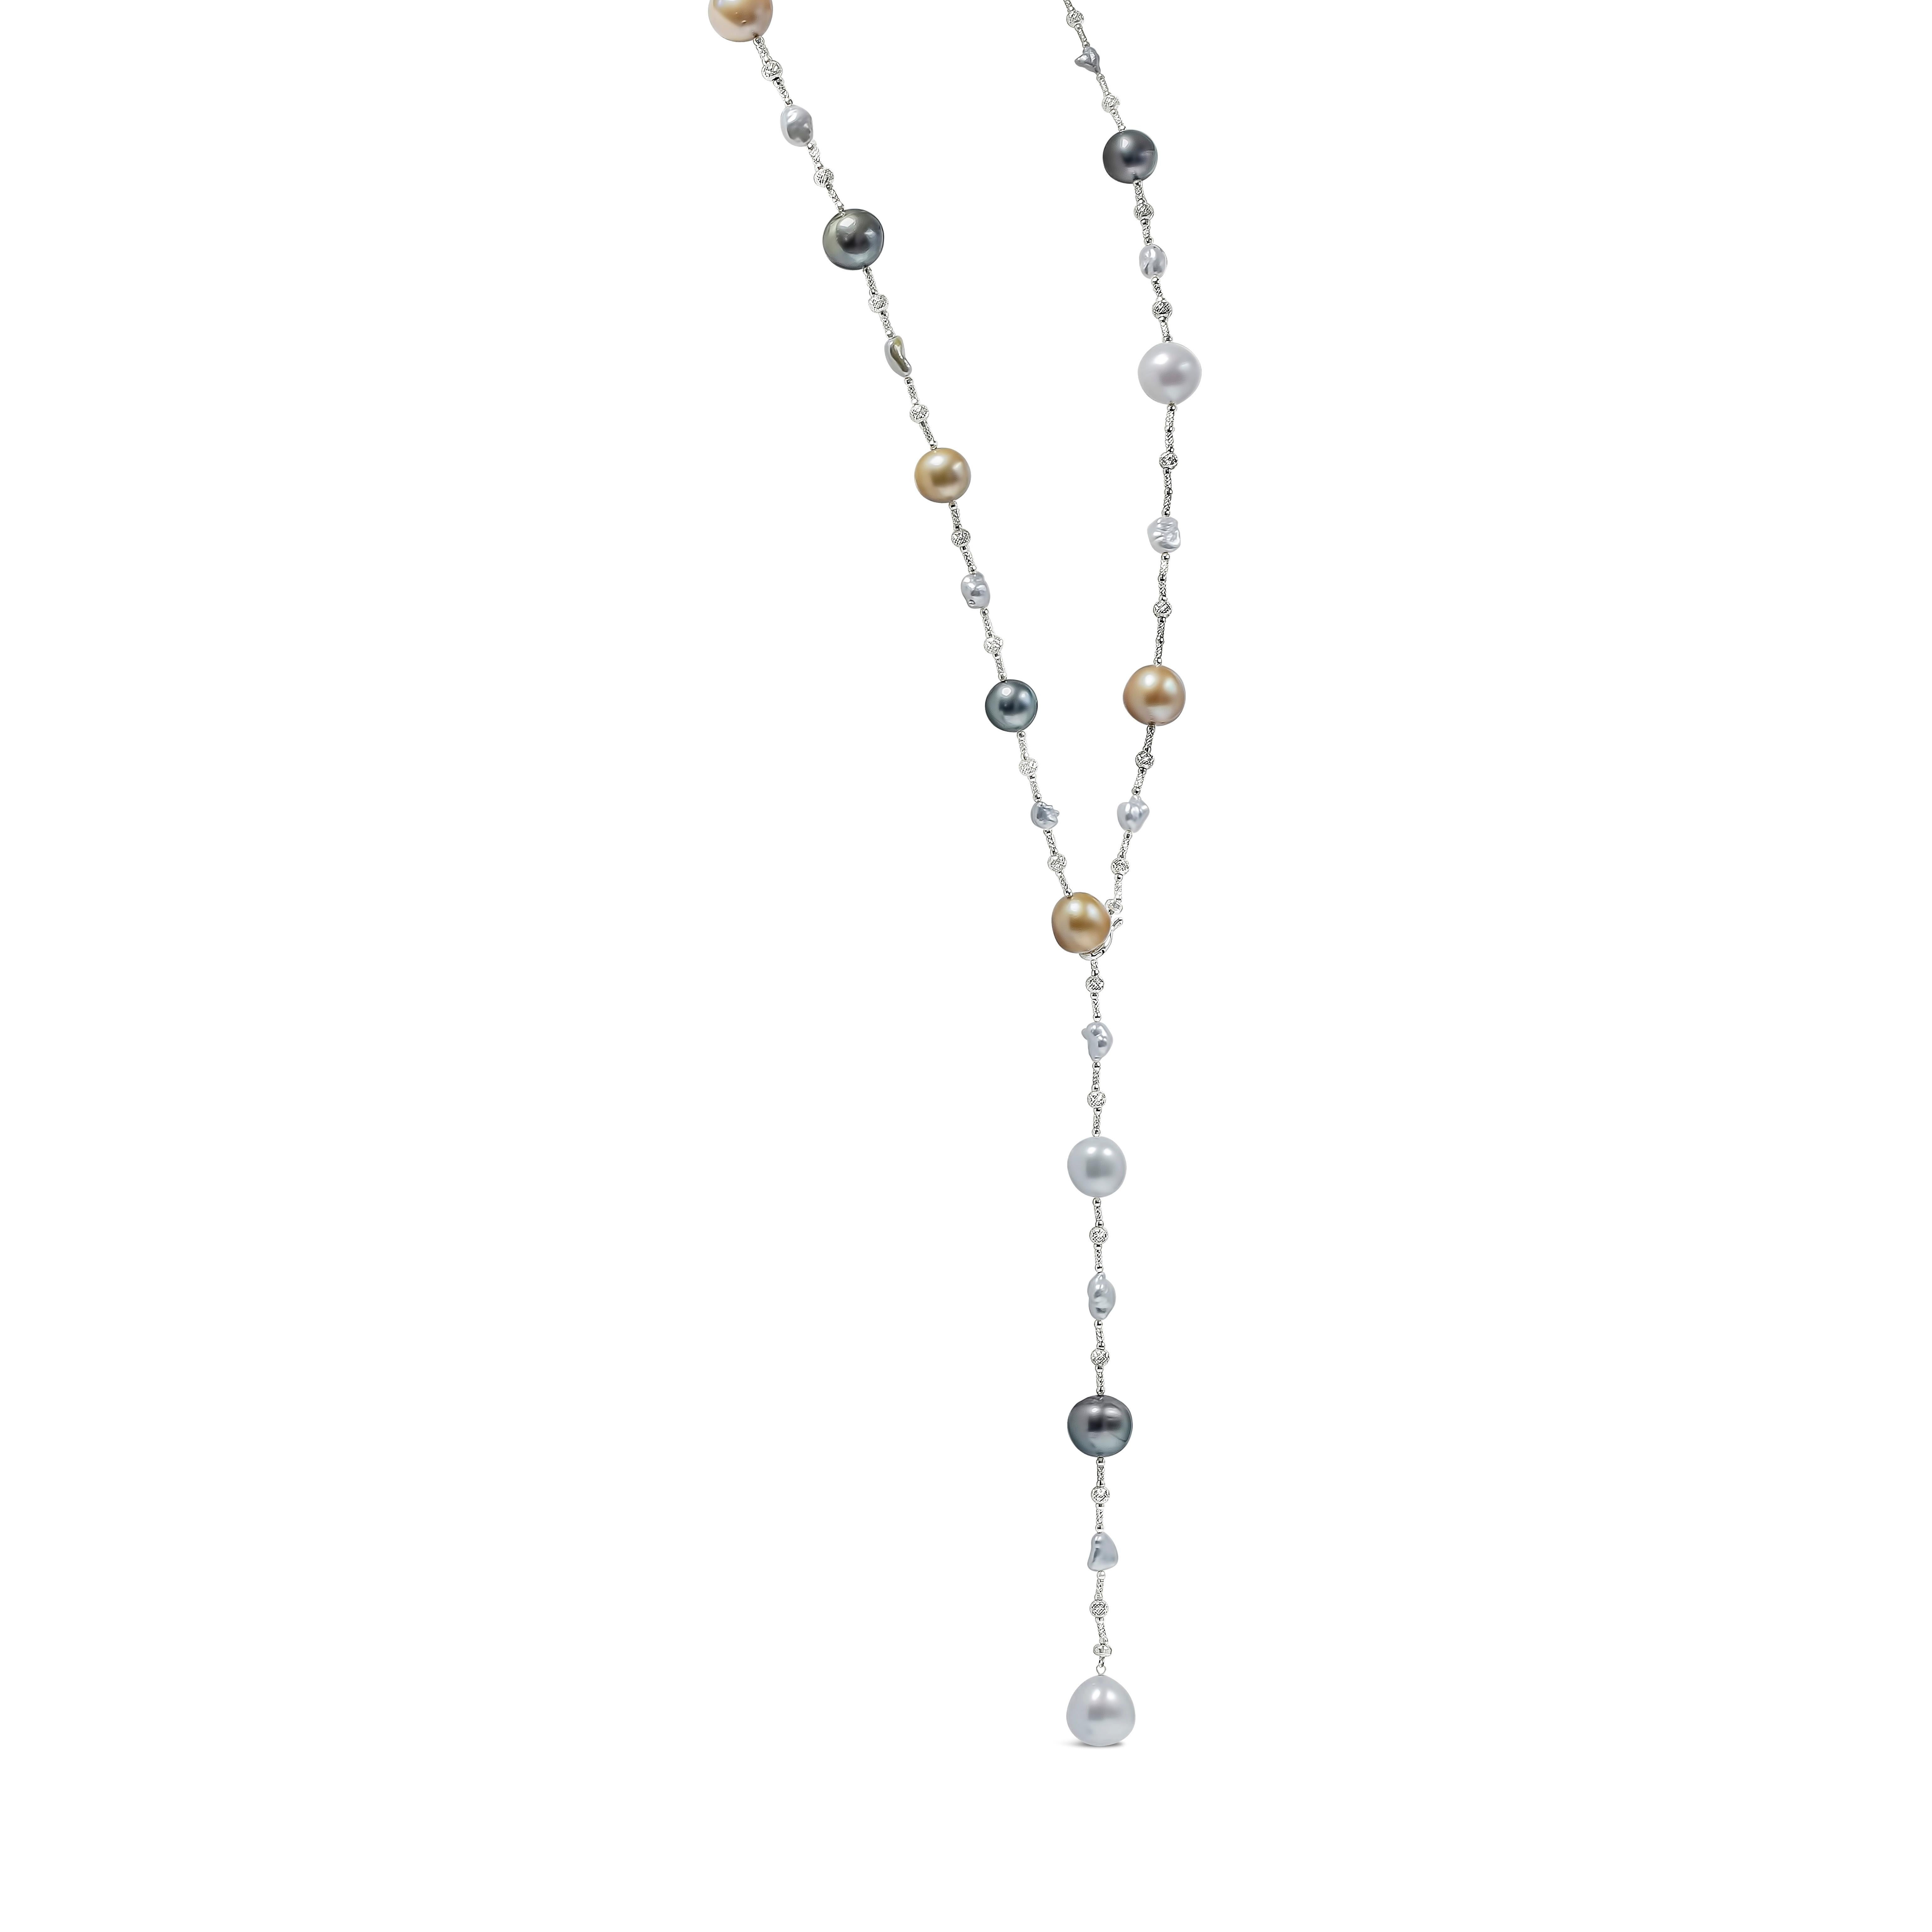 Eine sehr vielseitige Halskette mit 11-14mm, 30 Stück mehrfarbigen Südsee-, Tahiti- und Keshiperlen. Gleichmäßig durch 18k Weißgold Knoten beabstandet. 32 Zoll in der Länge und Länge dieser Halskette kann angepasst werden. Fein gearbeitet aus 18